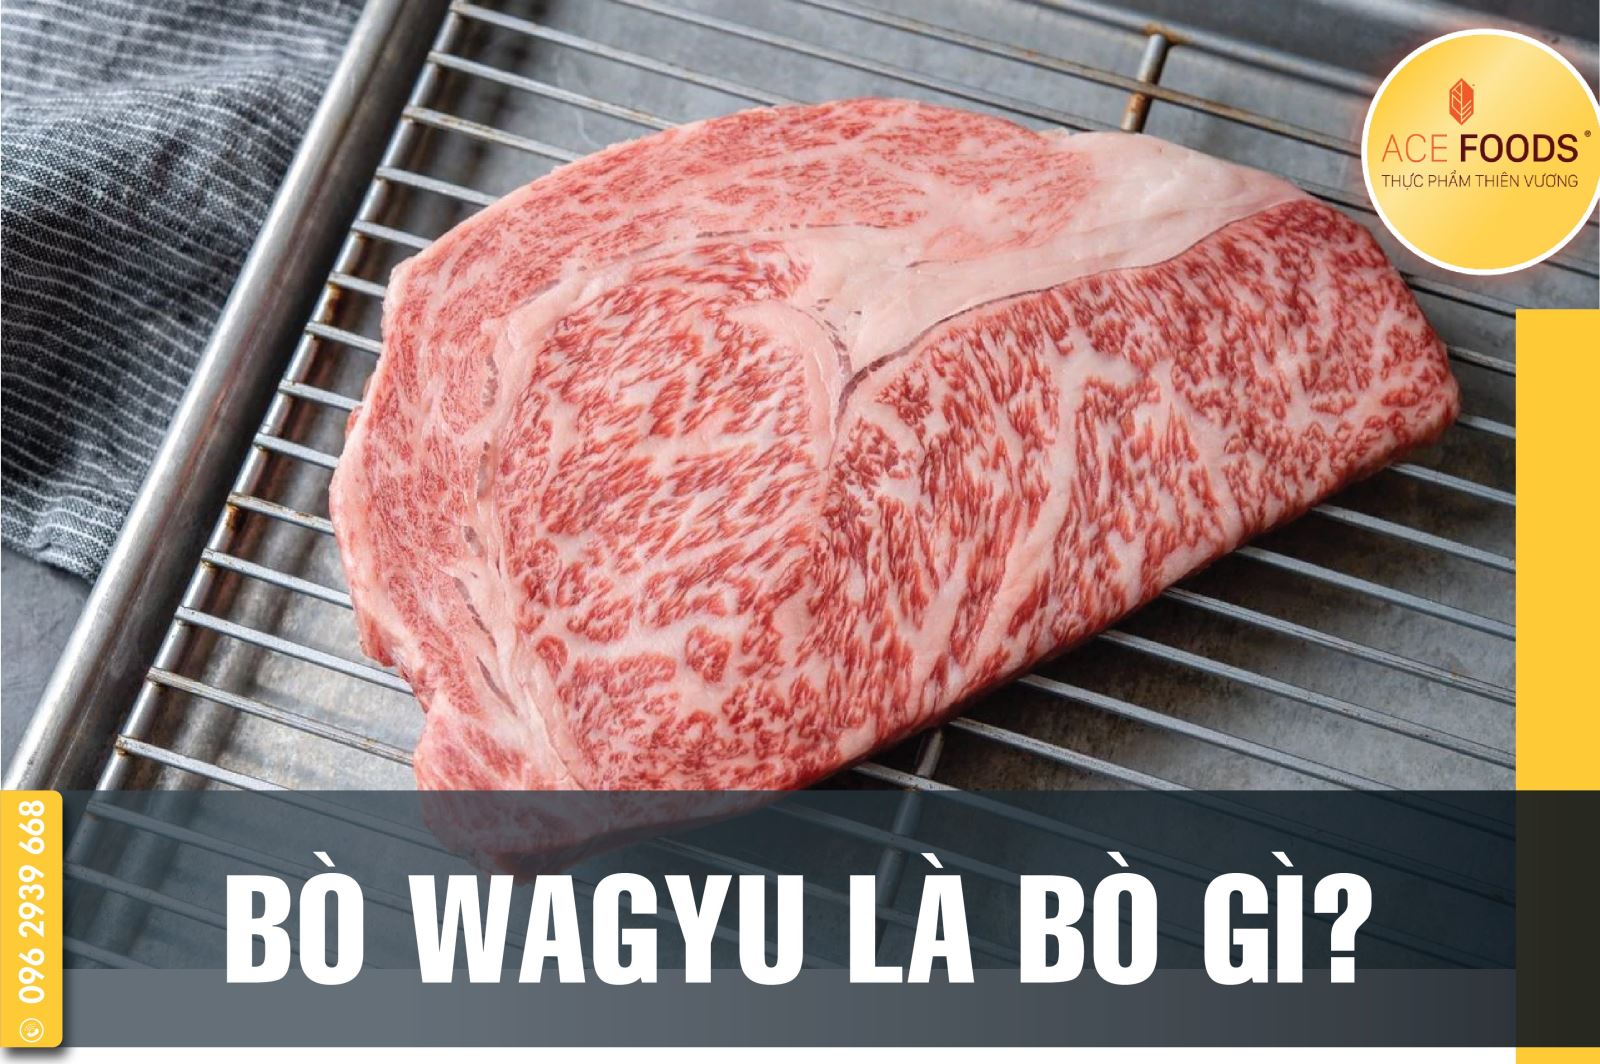 Bò wagyu chưa chắc đã là bò kobe nhưng bò kobe chắc chắn là bò wagyu